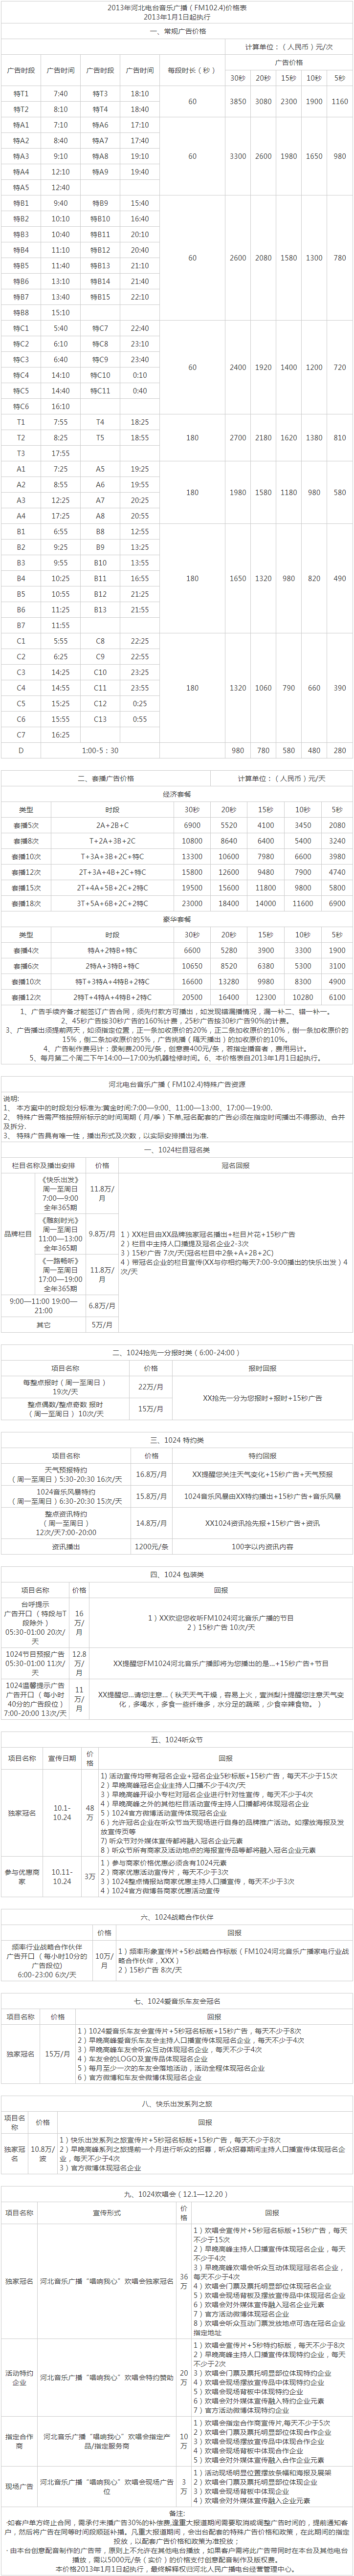 2013河北人民广播电台音乐广播FM102.4广告报价表.png